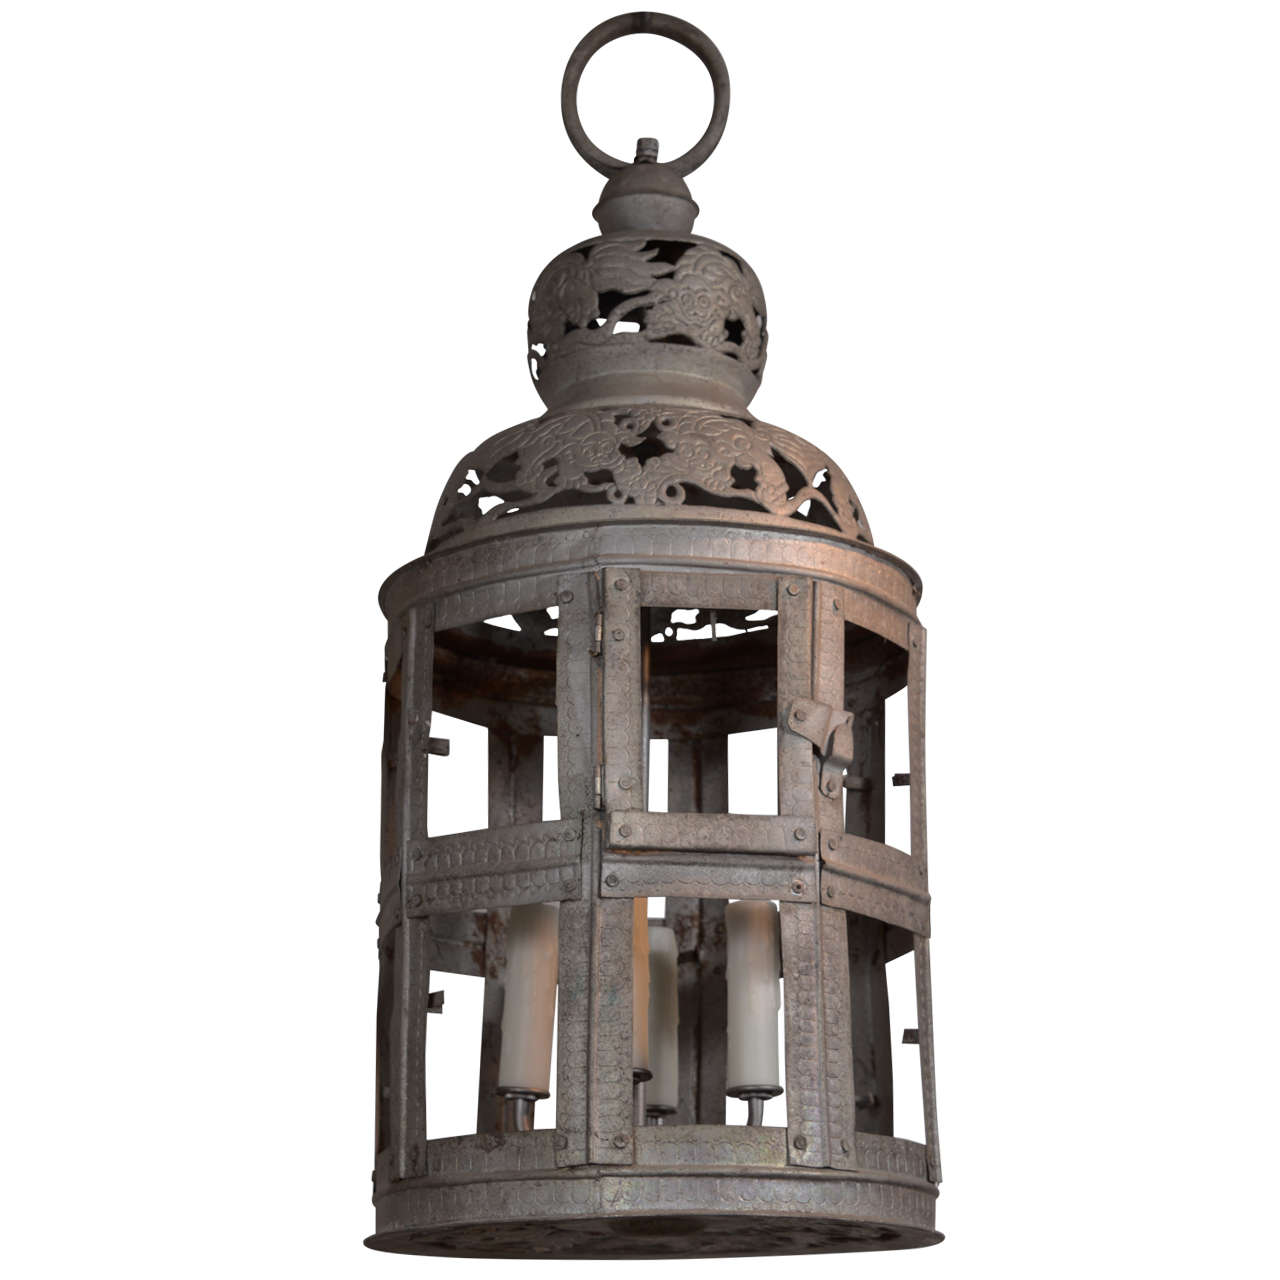 19th Century Metal Lantern